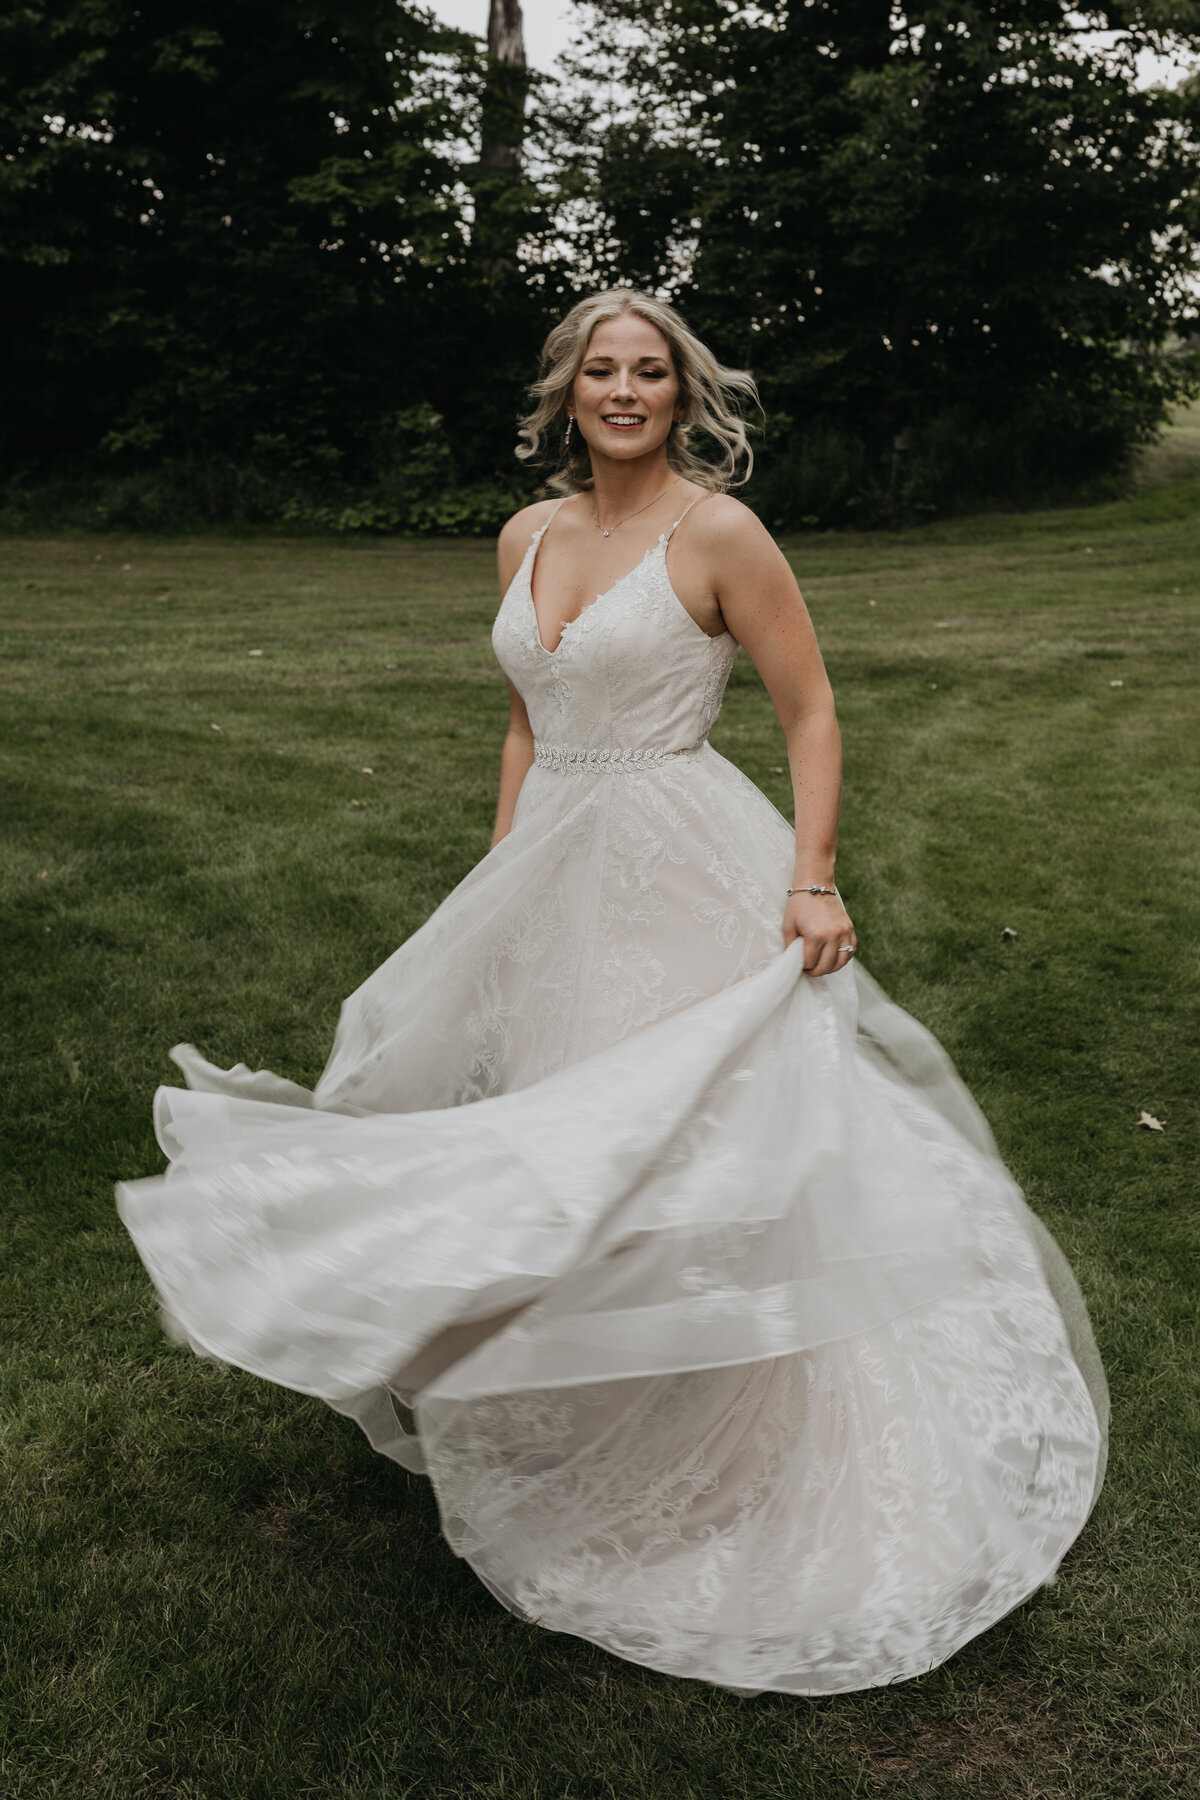 Bride twirling in dress